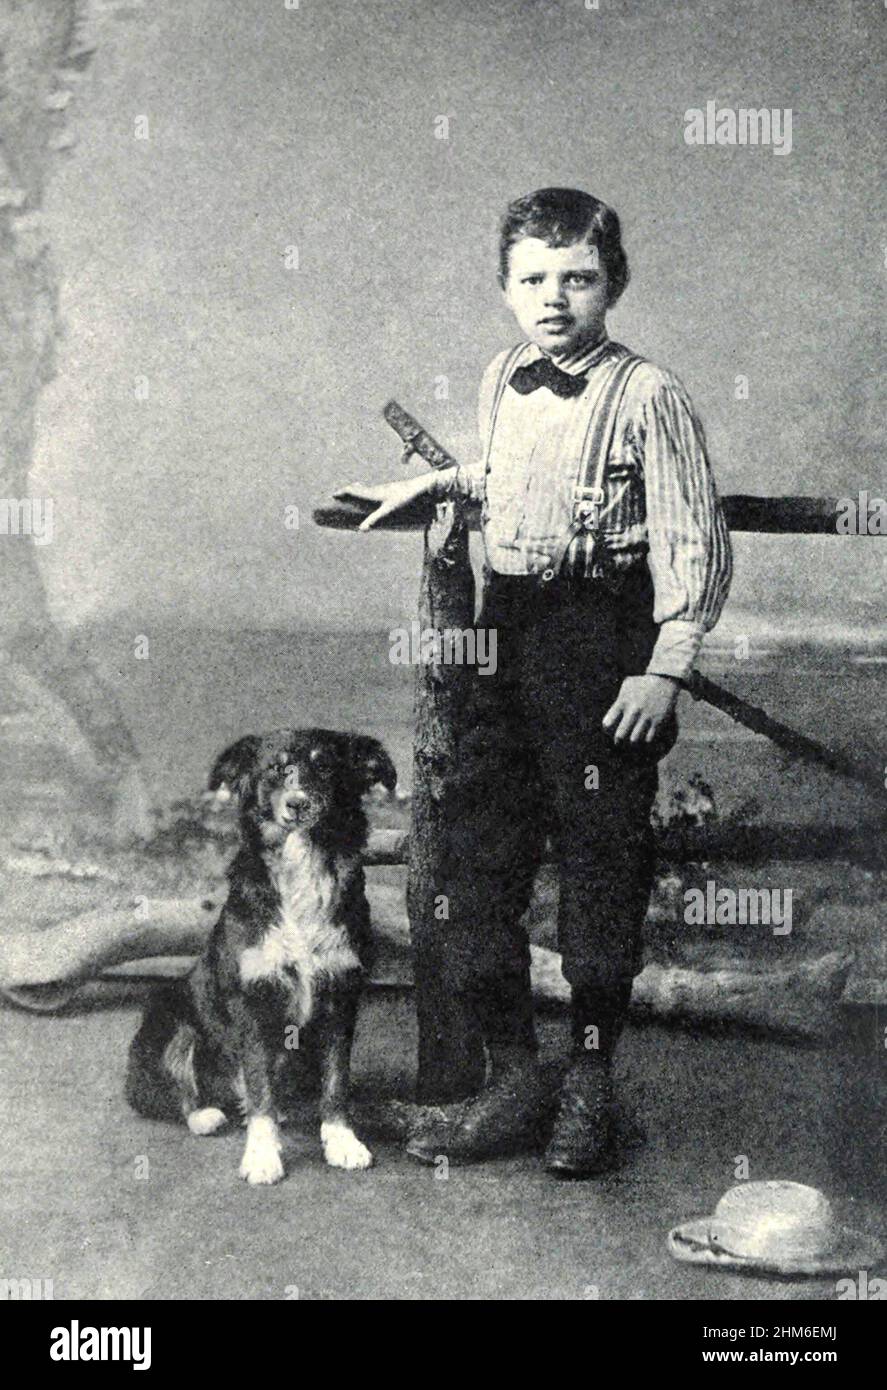 Lo scrittore americano Jack London (vero nome John Griffith Chaney), autore di Call of the Wild e White Fang. Foto del 1885 quando l'autore era 9, visto con il suo cane Rollo. Foto Stock